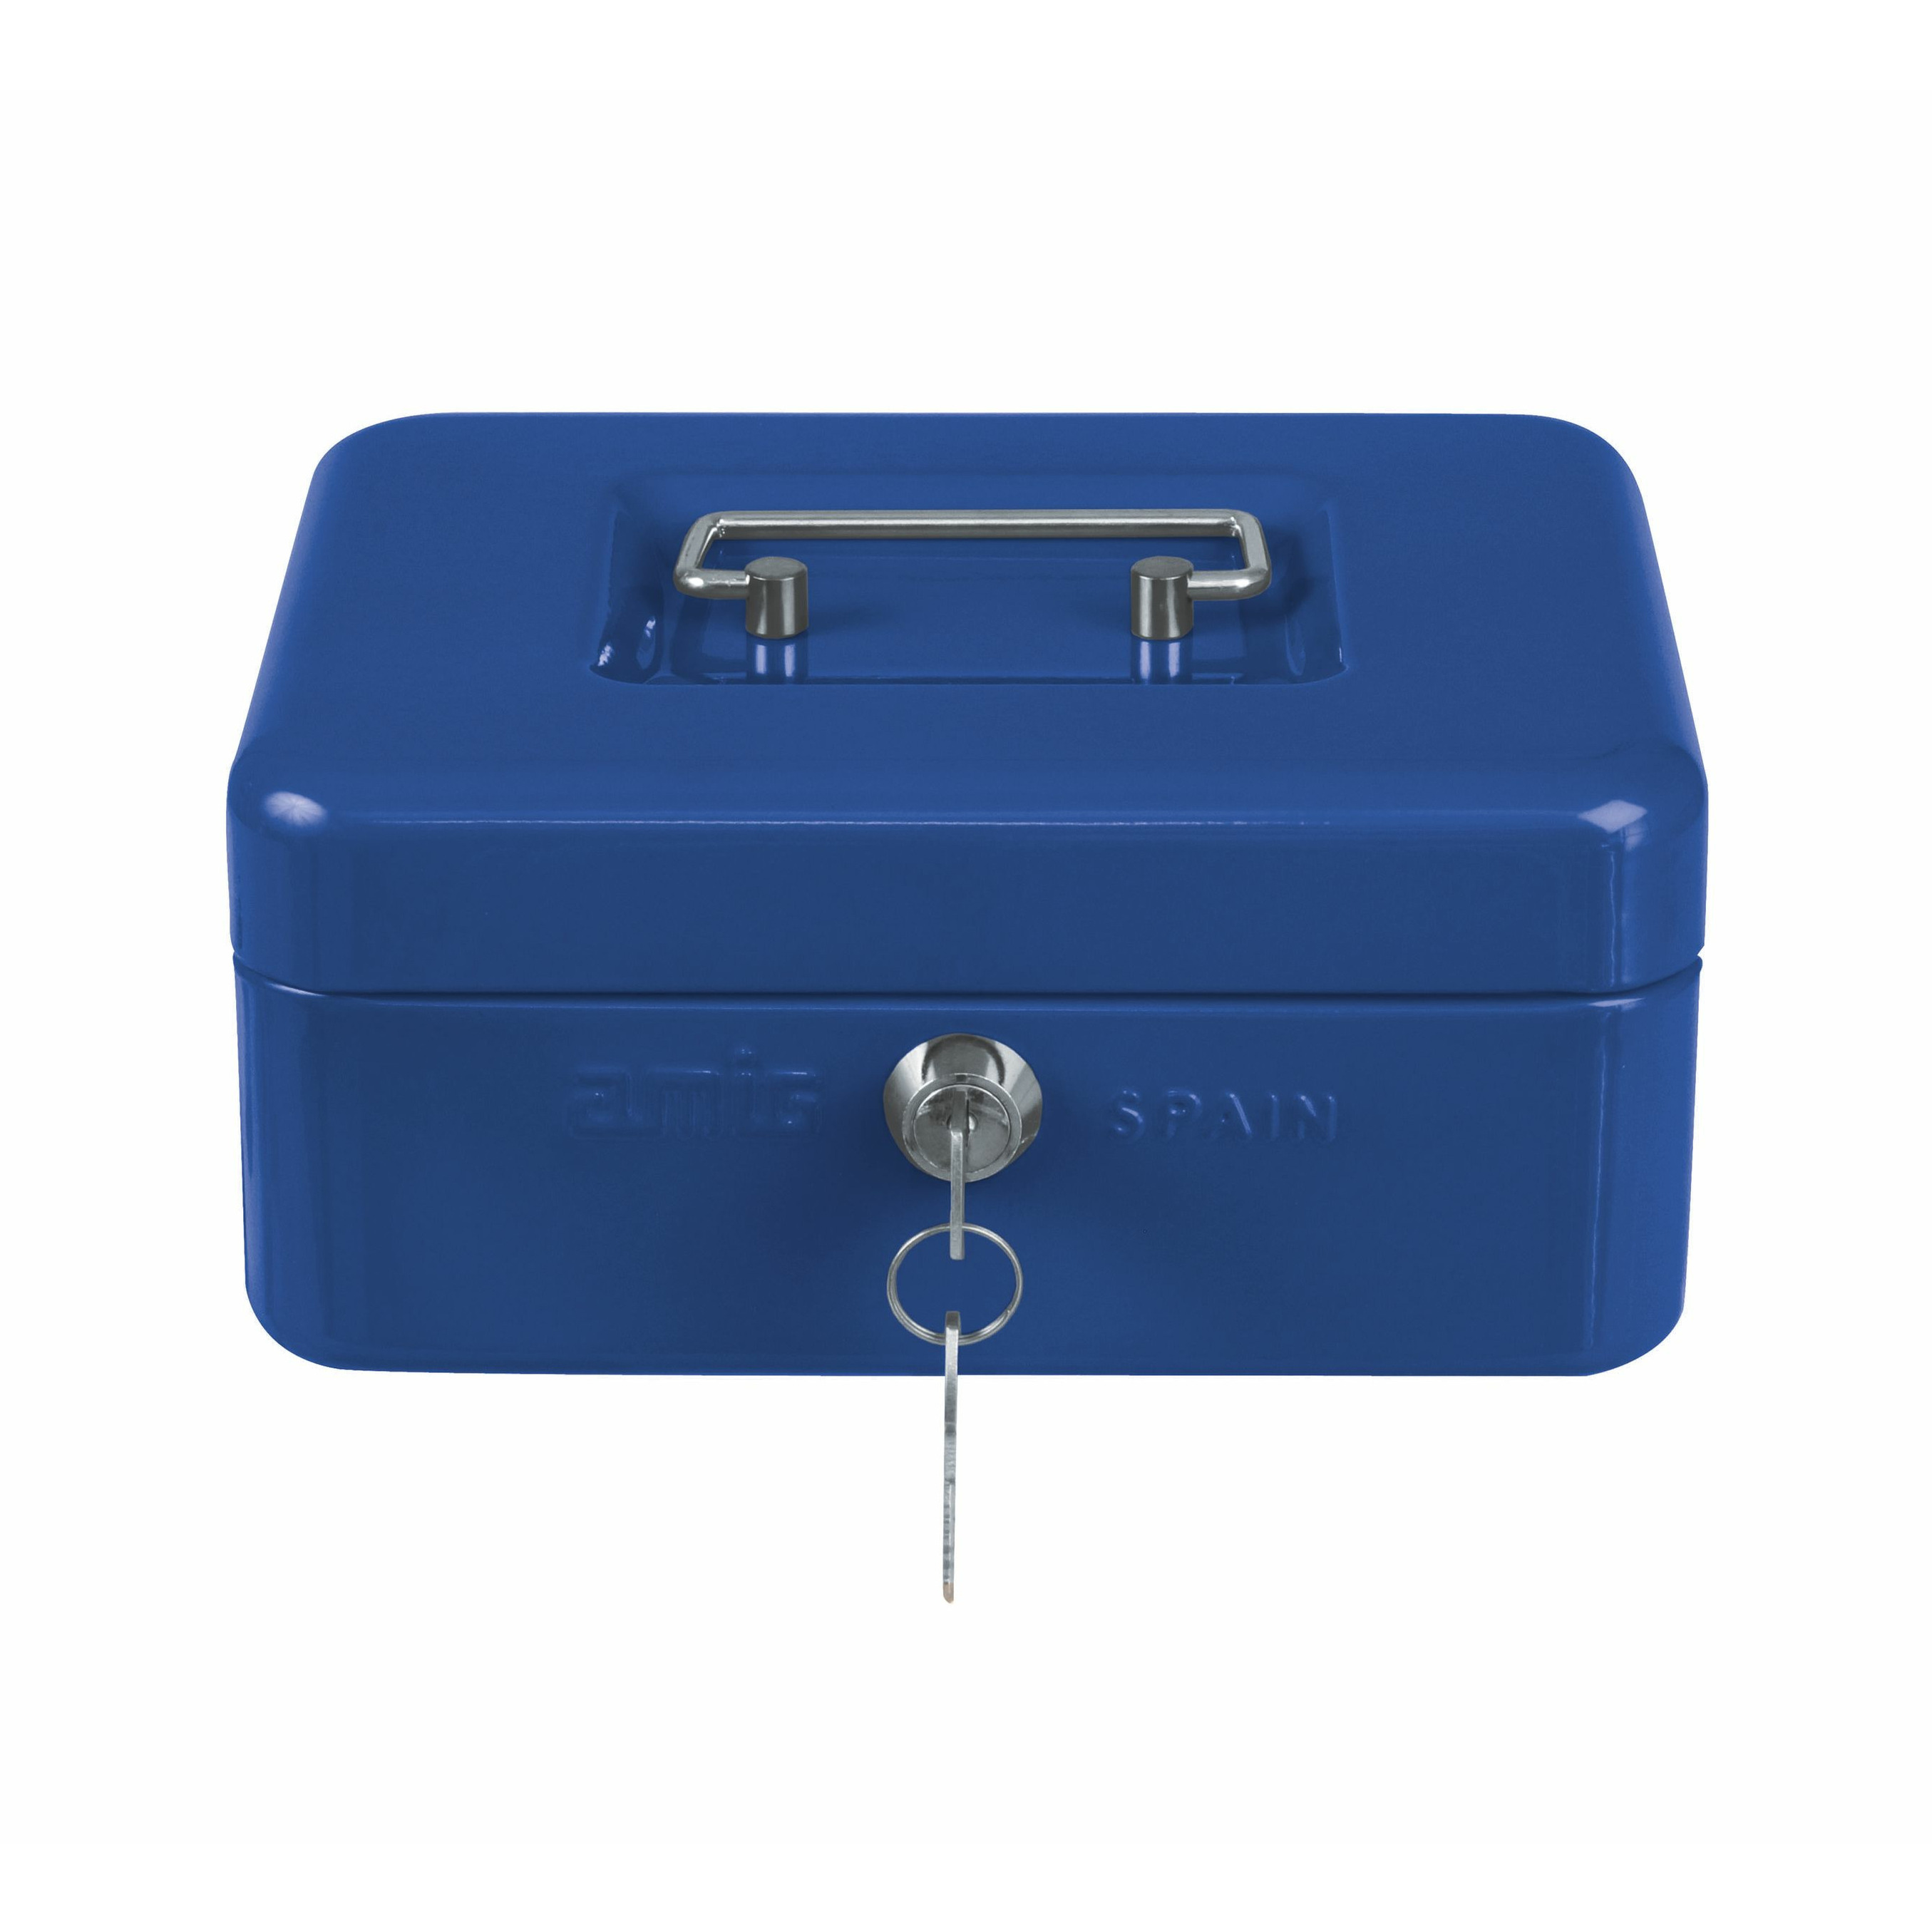 Geldkistje met 2 sleutels blauw staal muntbakje 25 x 18 x 9 cm inbraakbeveiliging